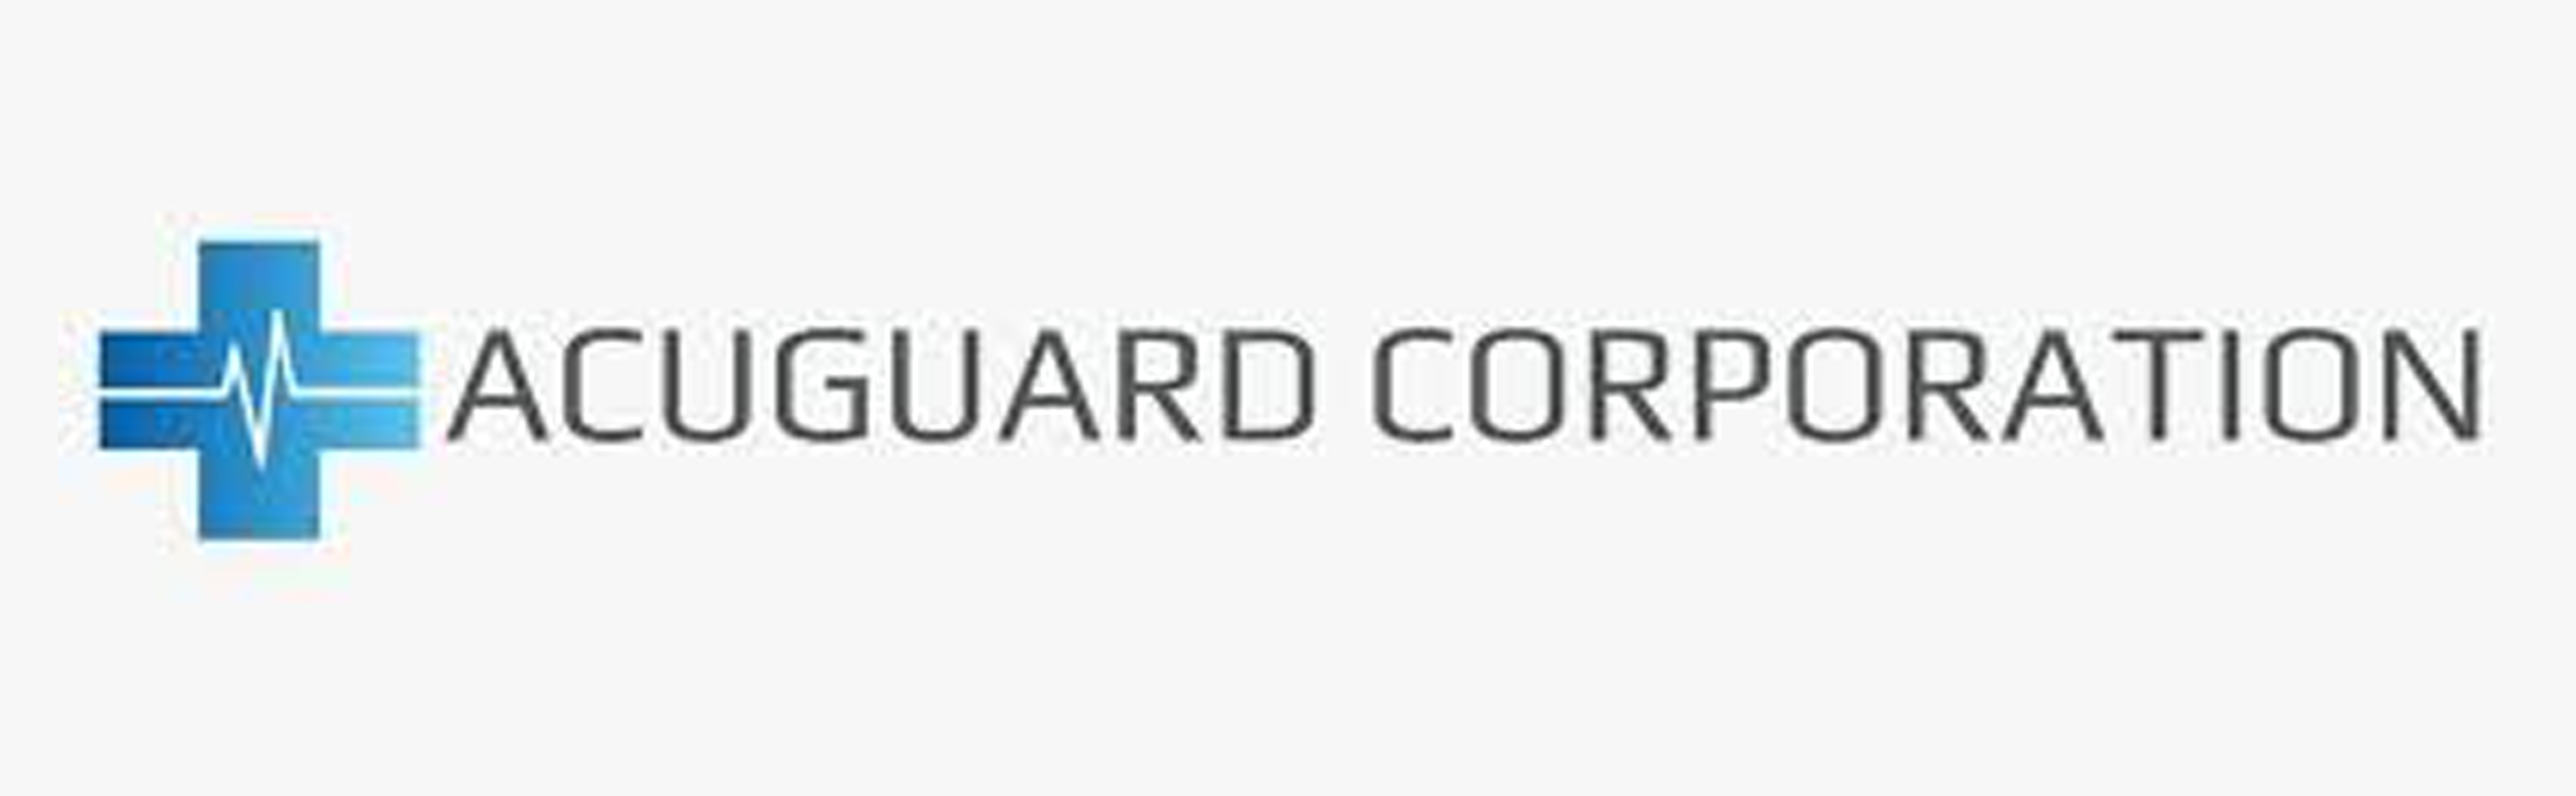 AcuGuard Corporation